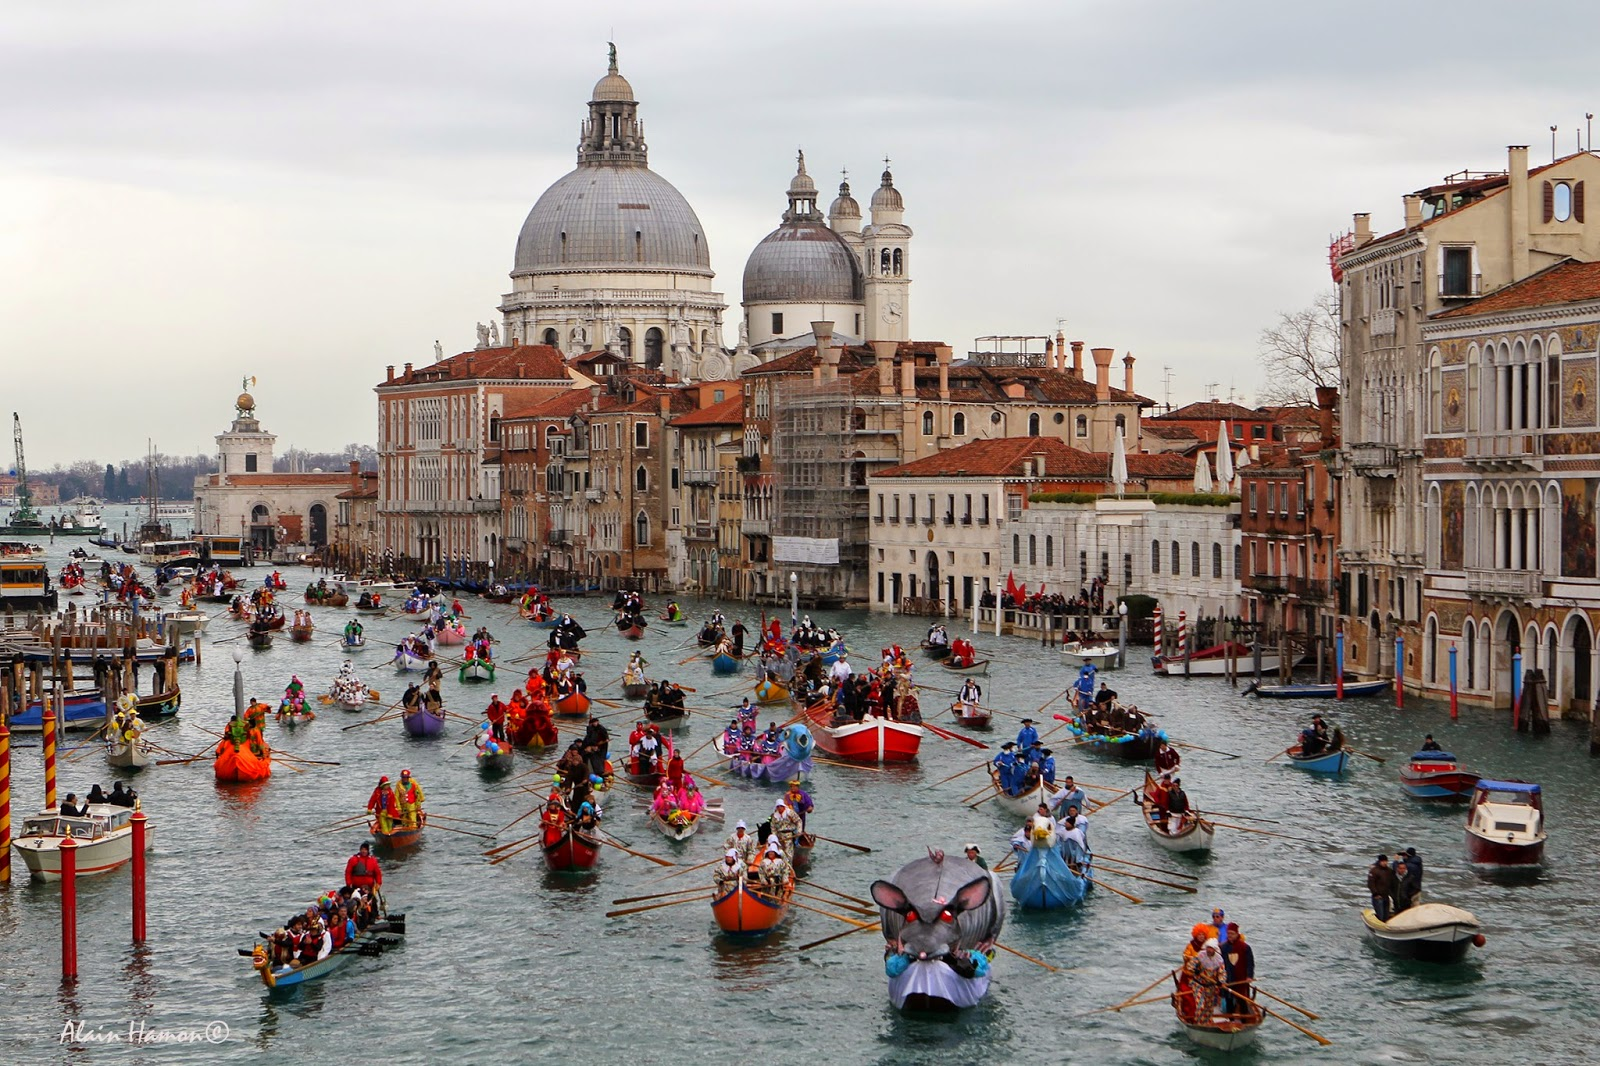 Coup d'envoi du plus célèbre carnaval du monde / Festival de couleur et merveilles à Venise